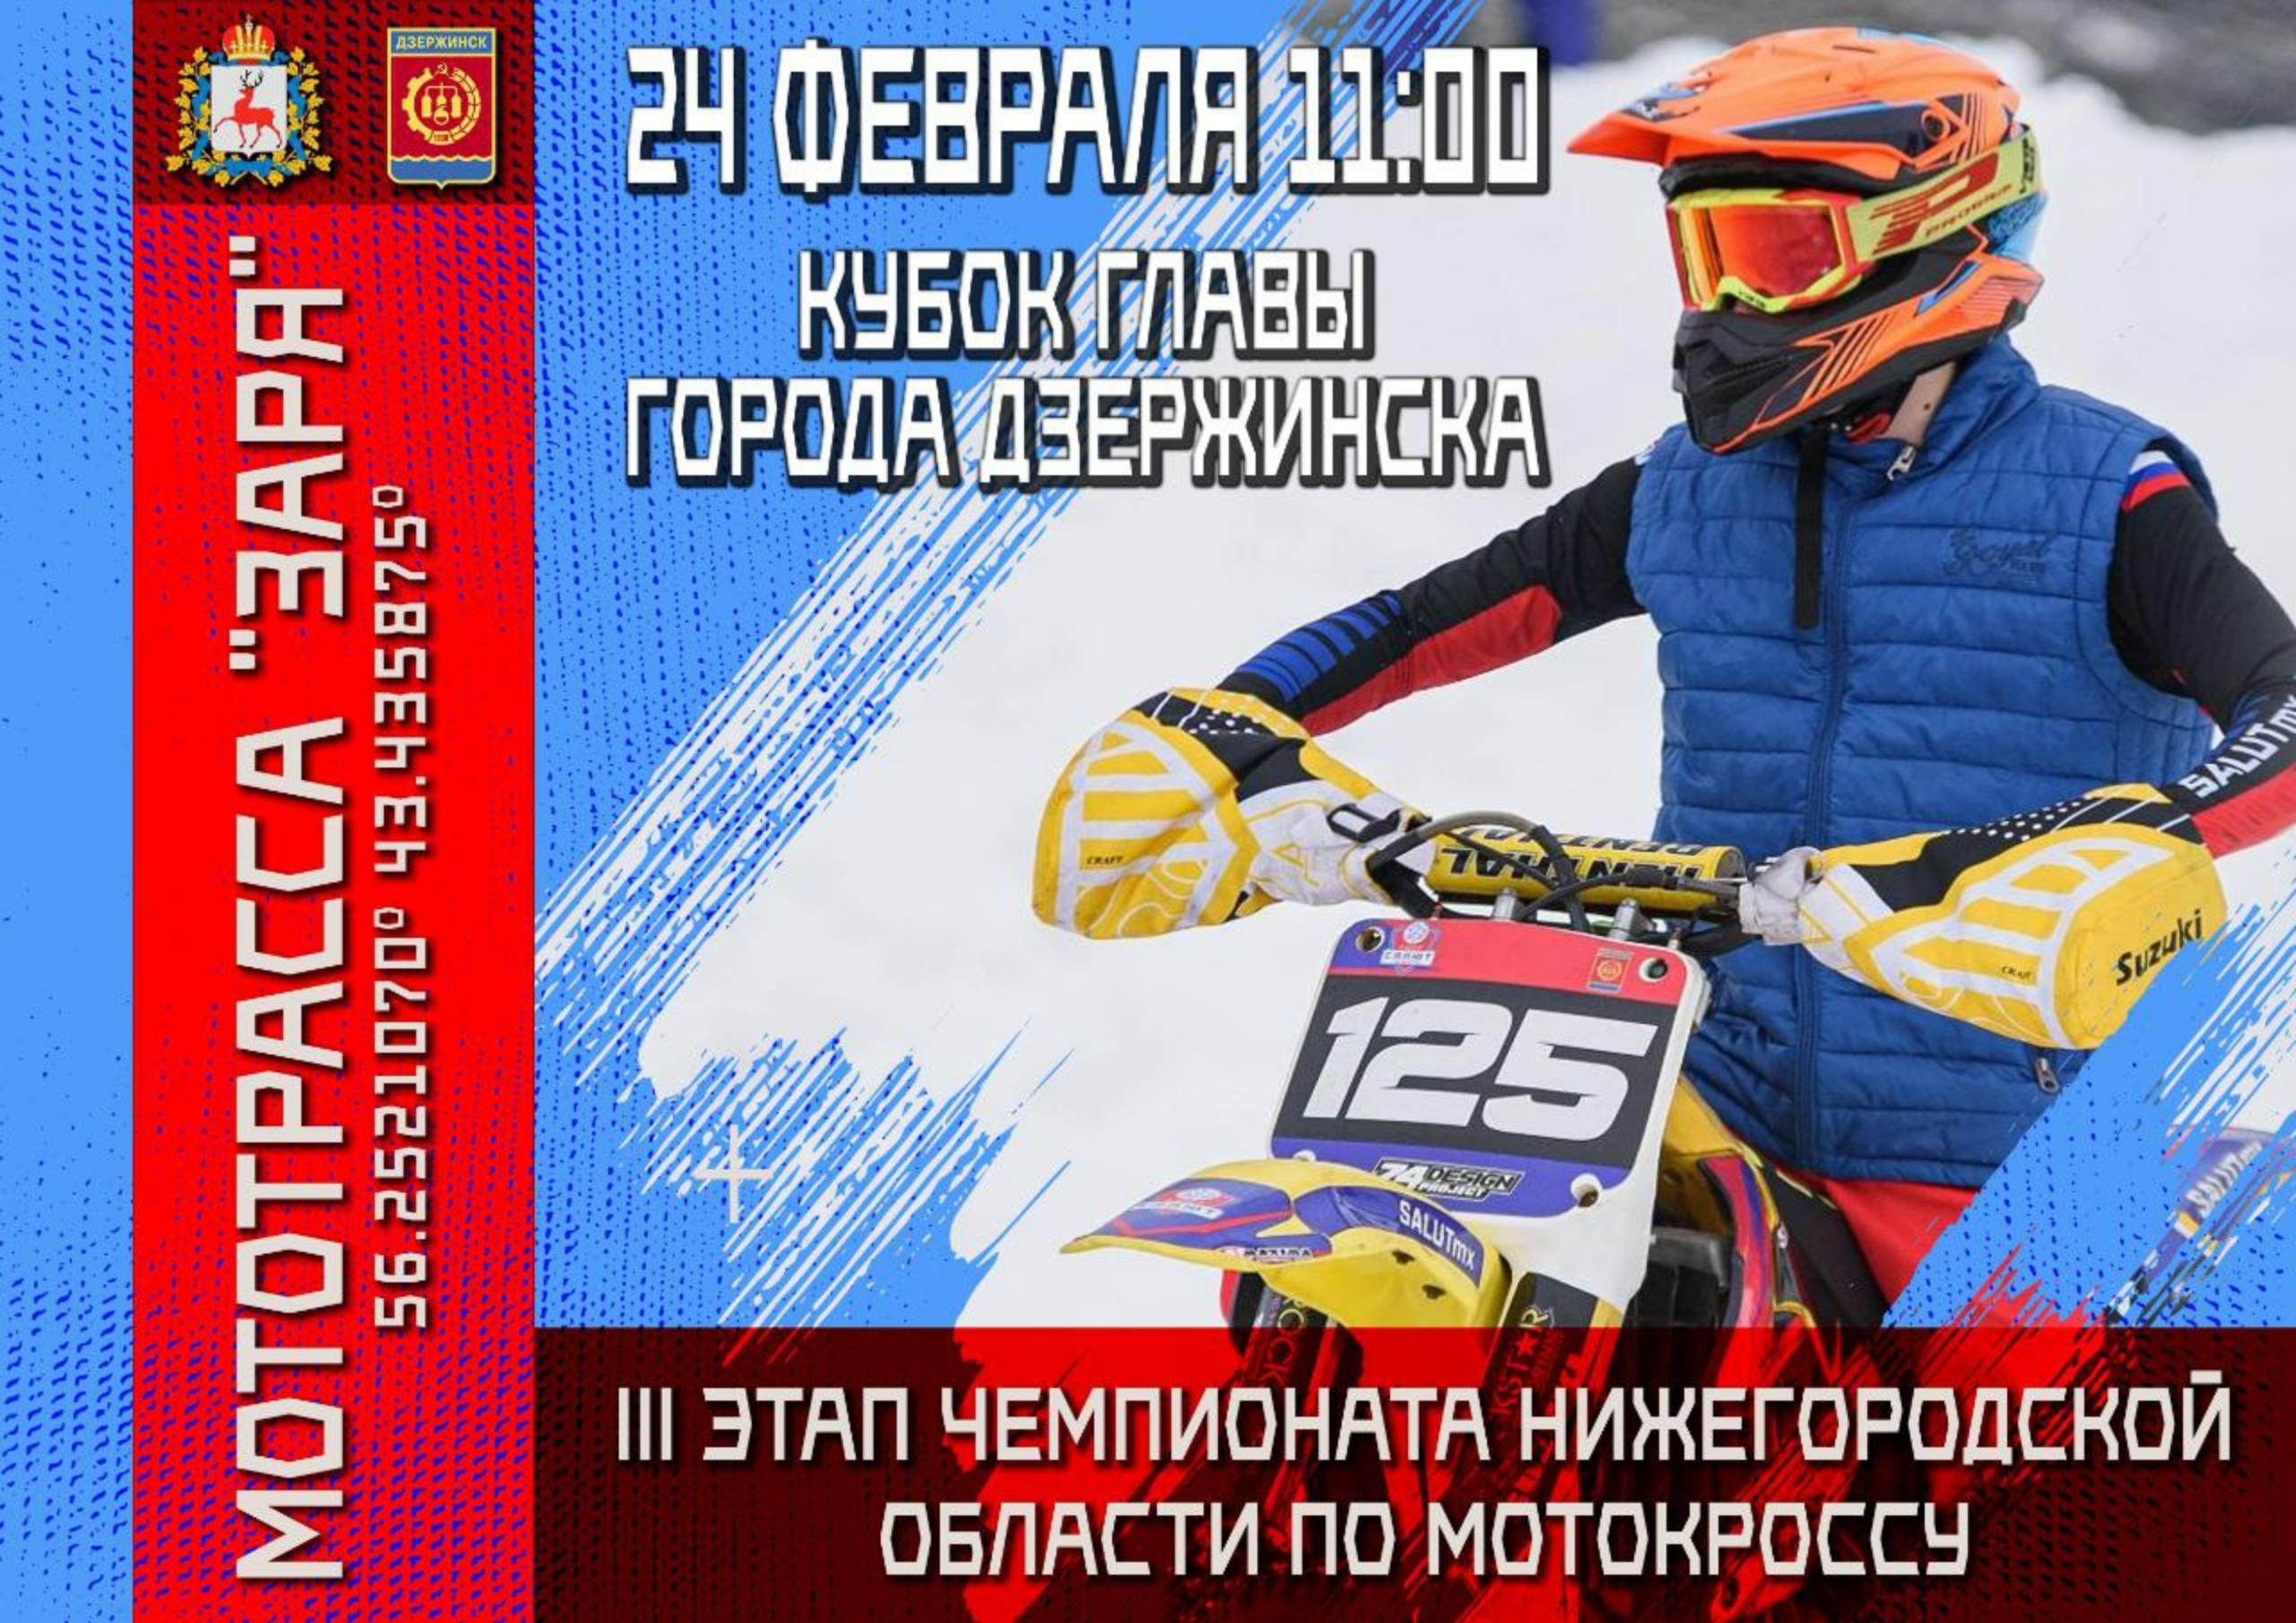 Кубок главы города Дзержинска пройдет в рамках областного Чемпионата по мотокроссу